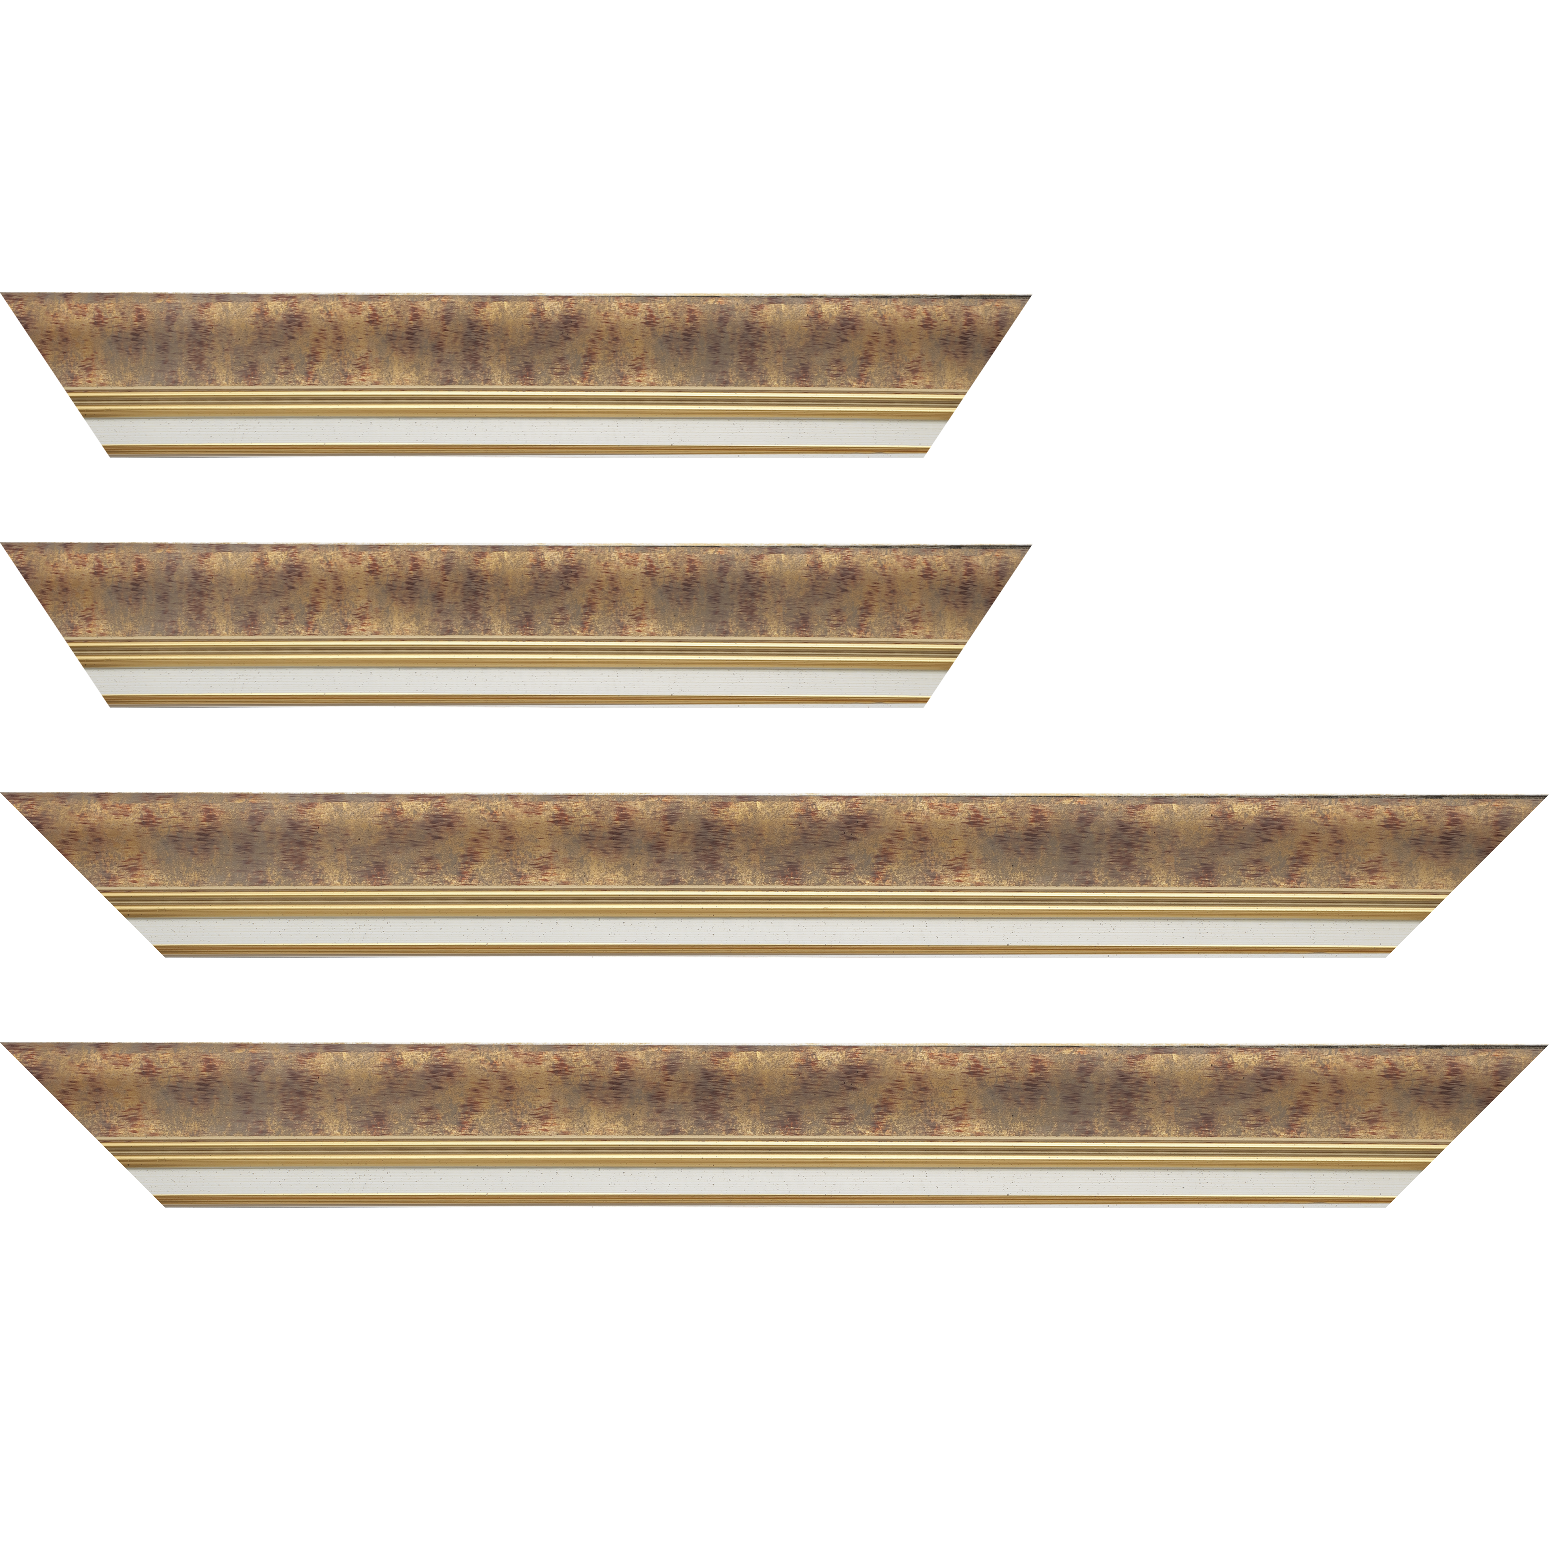 Baguette bois profil incurvé largeur 5.7cm de couleur bordeaux patiné fond or marie louise blanche mouchetée filet or intégré - 18x24